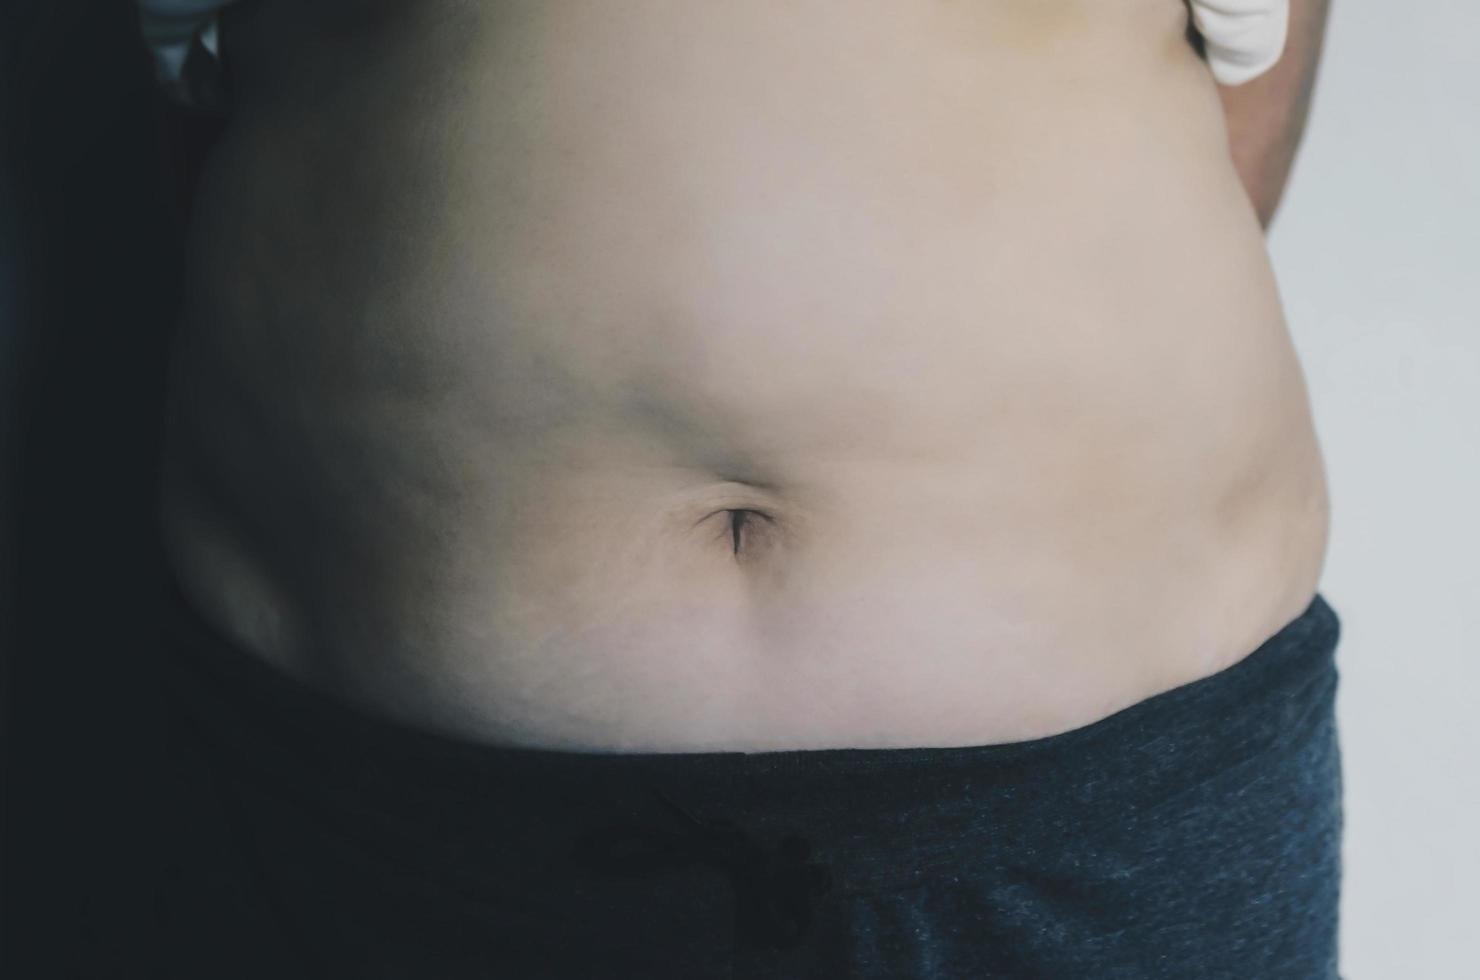 corps humain et corps gras, panse ou ventre et surpoids des personnes. photo